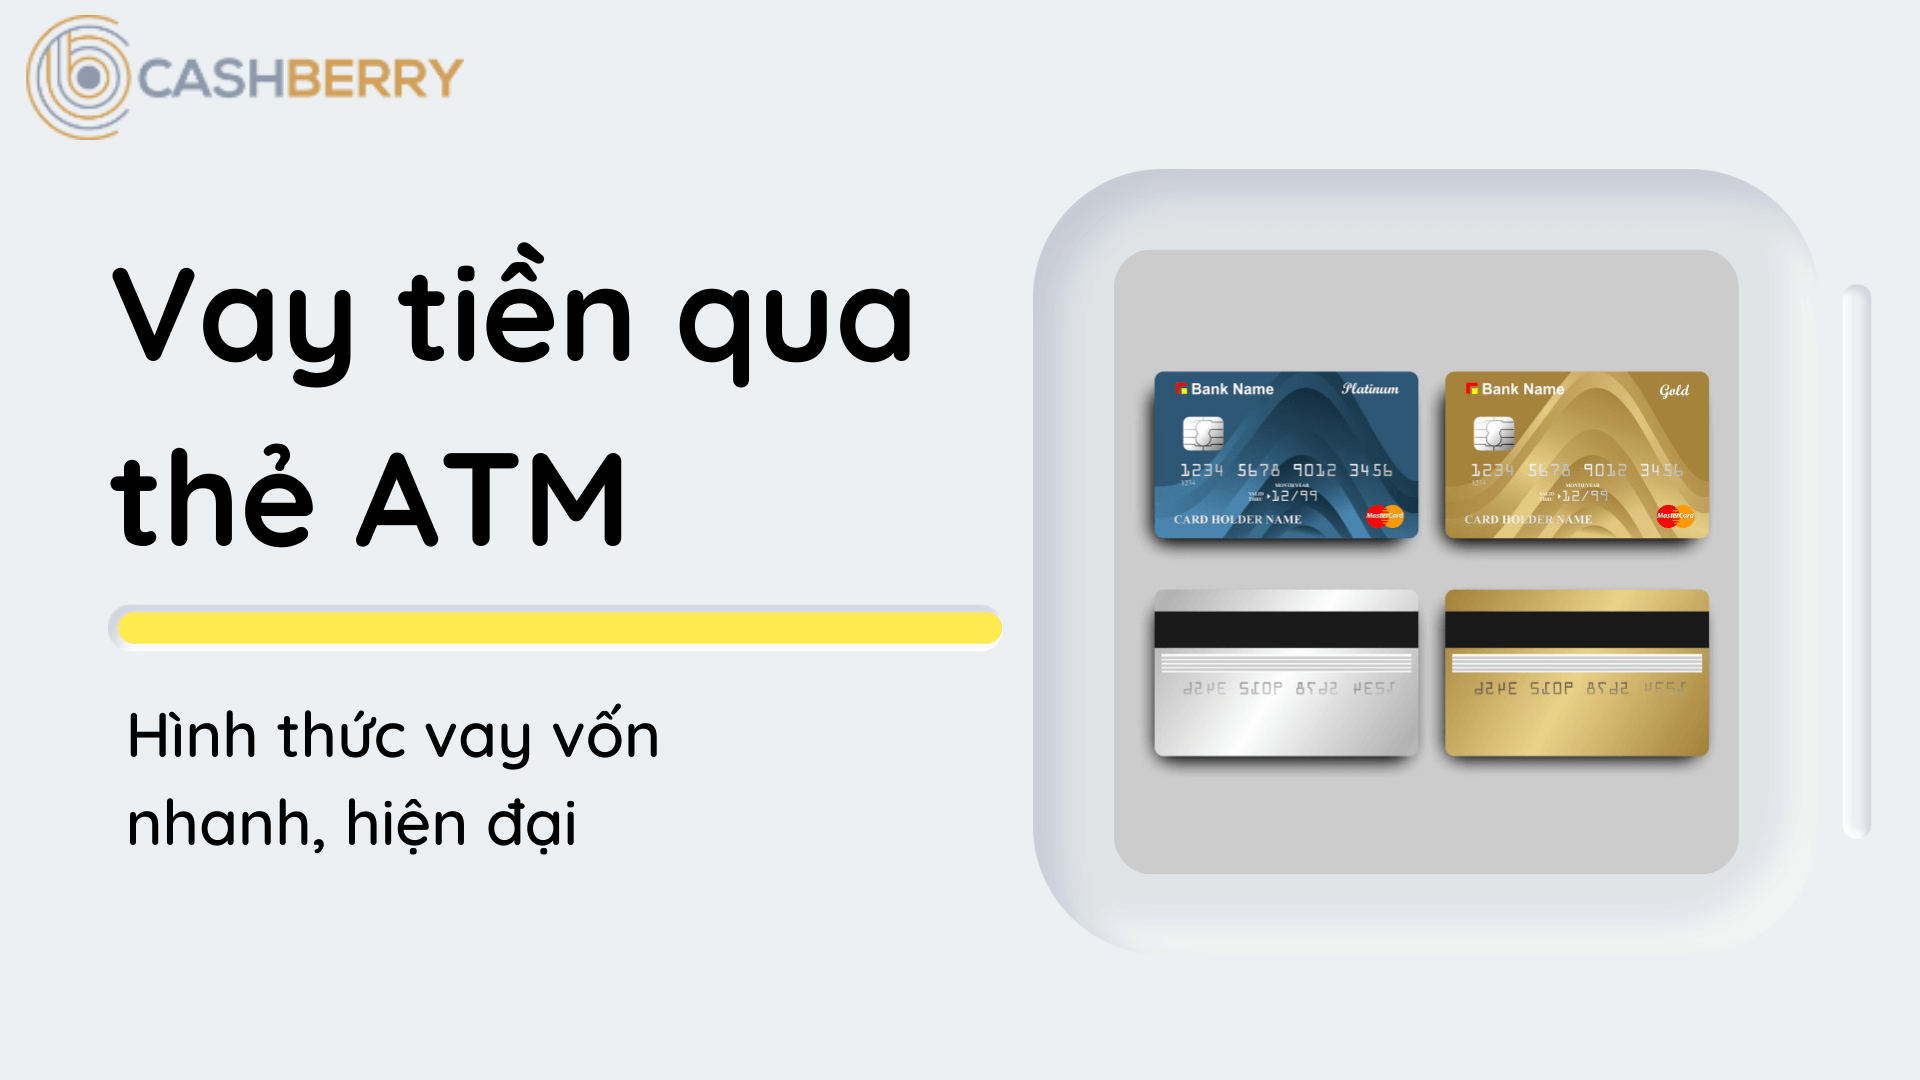 Ưu điểm khi vay tiền qua thẻ ATM